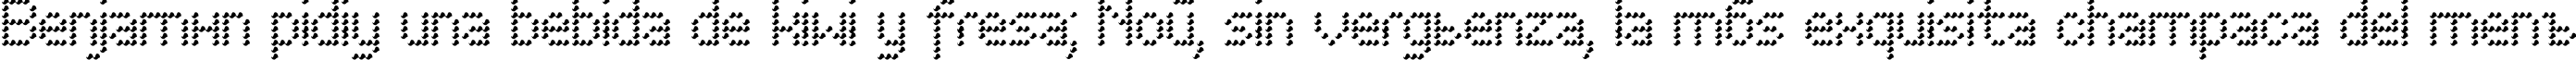 Пример написания шрифтом PerfoWave текста на испанском